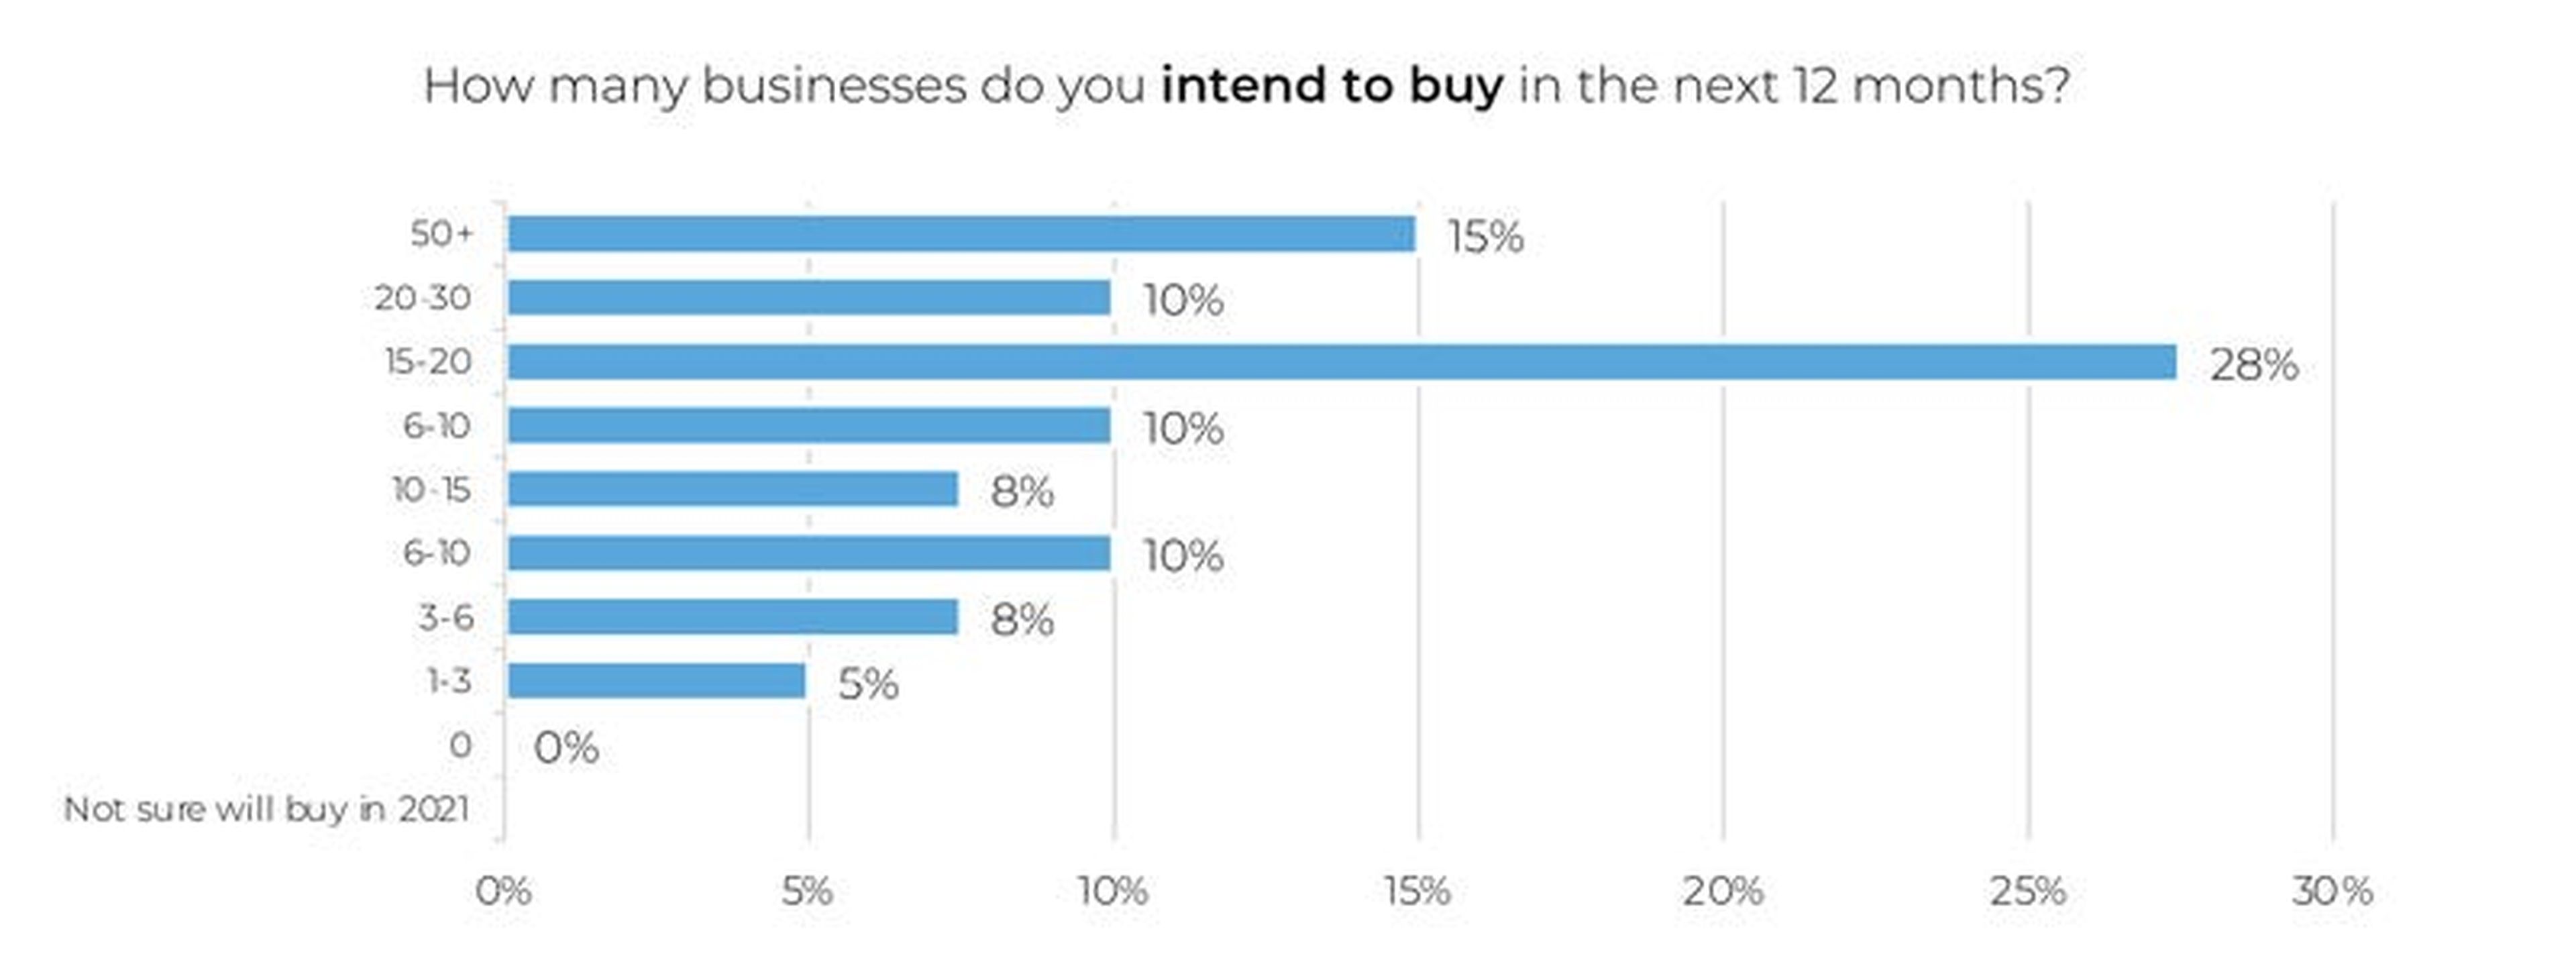 Una de las preguntas de la encuesta: ¿Cuántos negocios pretendes comprar en los próximos 12 meses?